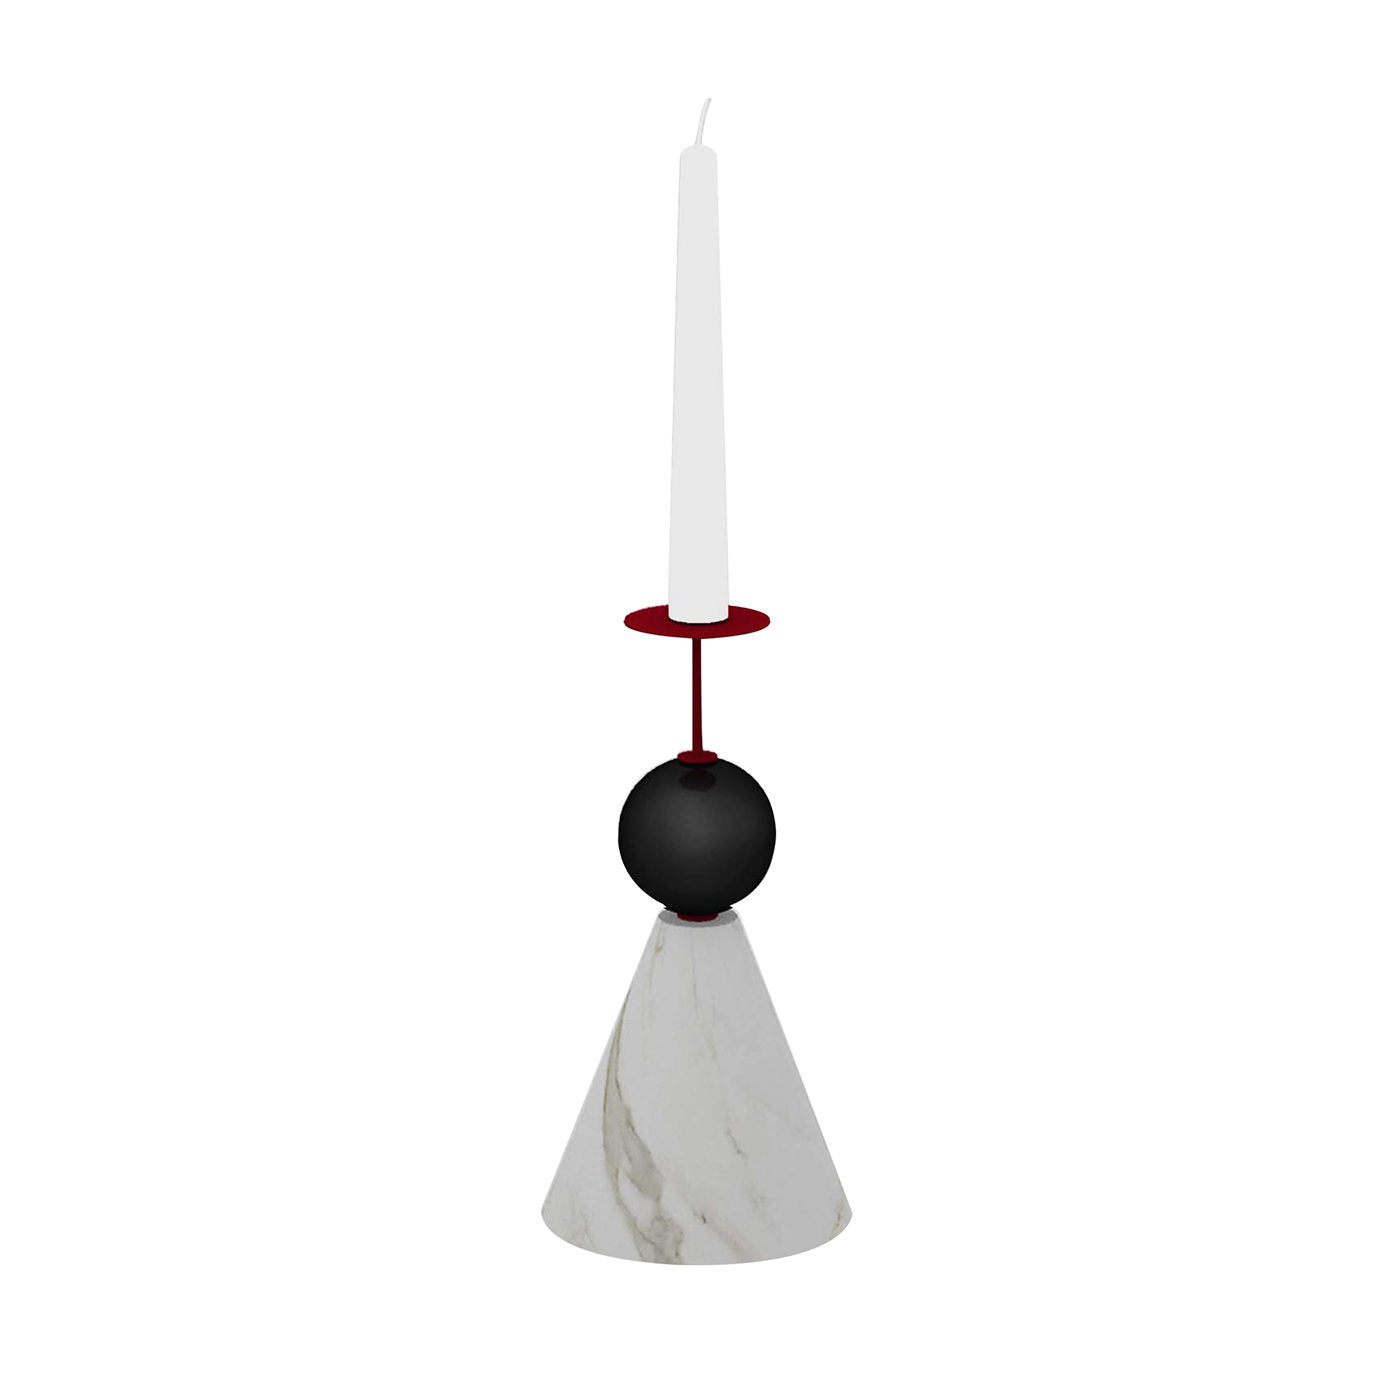 Raccontami Weißer Carrara, Schwarz und Rot Konische Kerzenständer - Hauptansicht